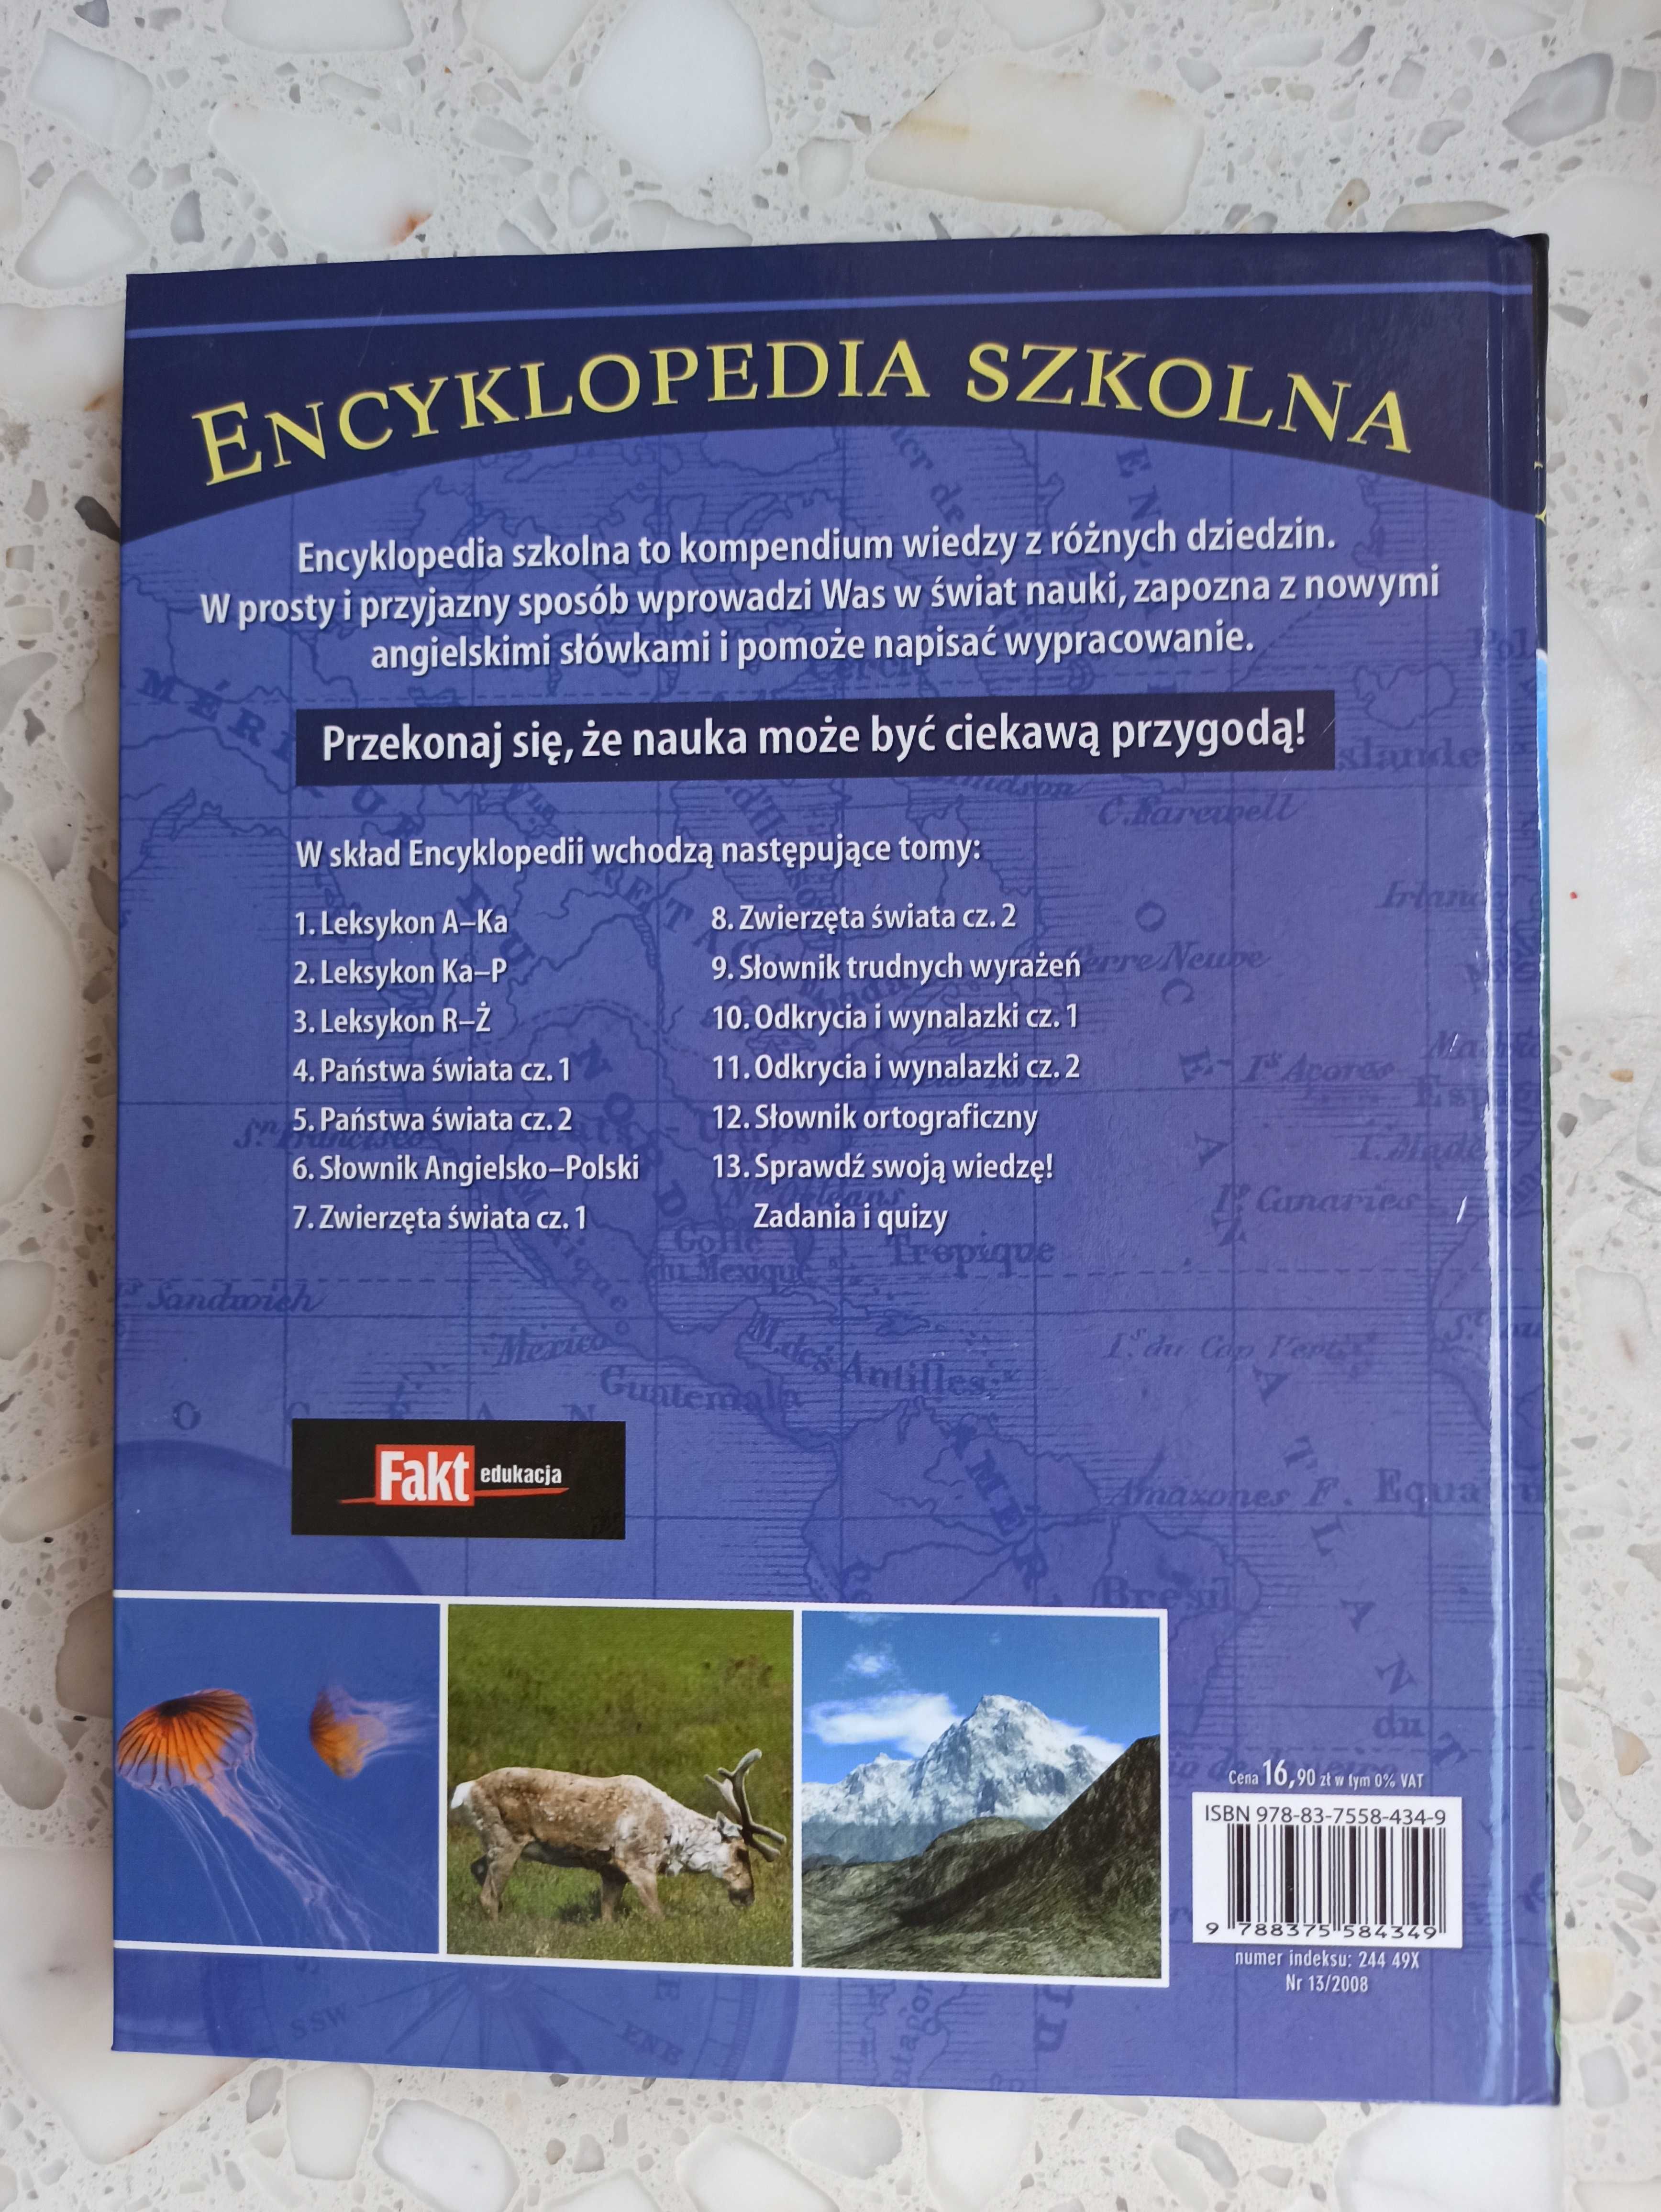 Encyklopedia Szkolna - "Sprawdź swoją wiedzę Zadania i quizy" (TOM 13)